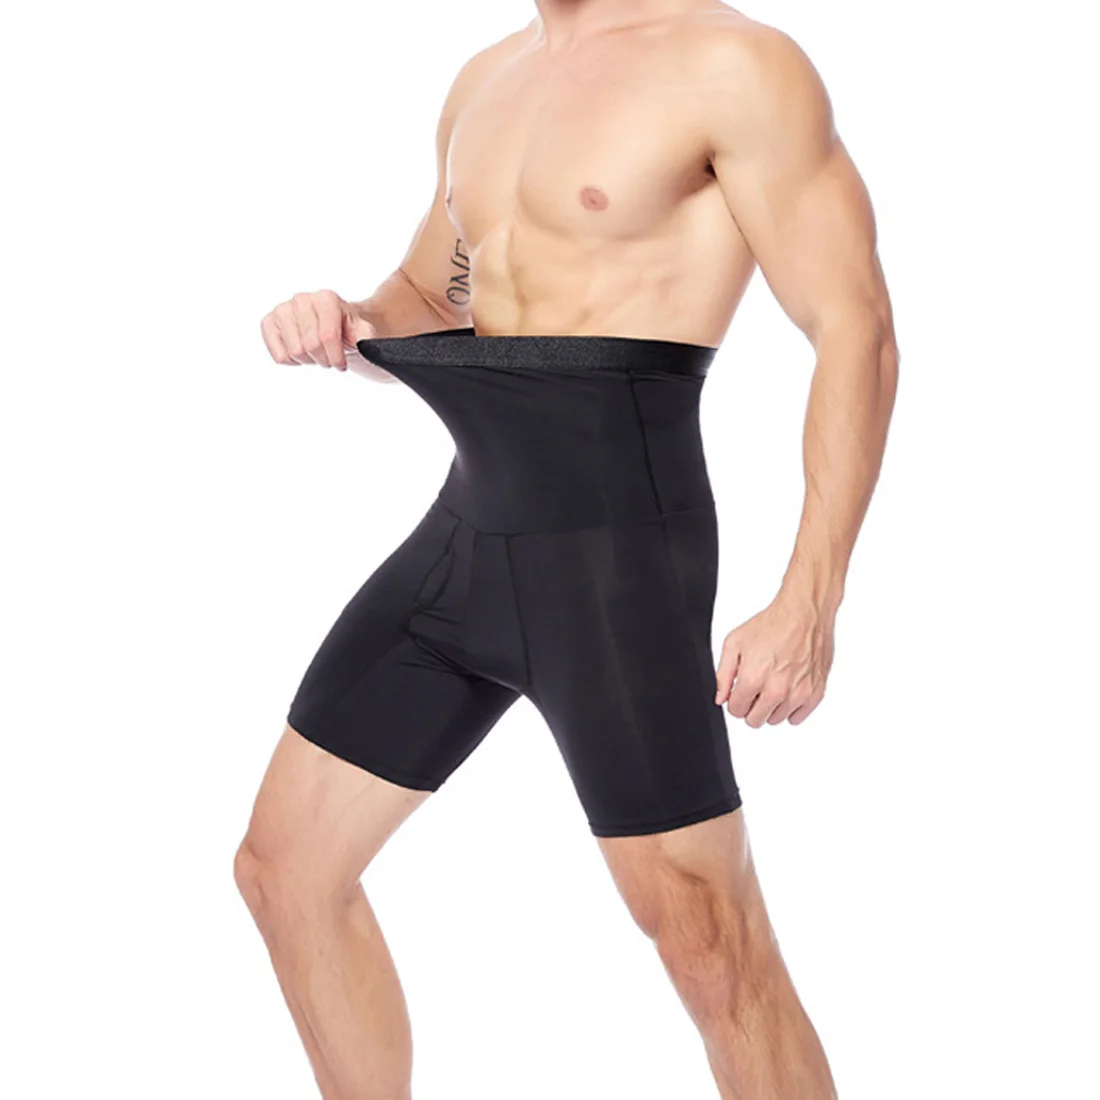 Формирователь мужского тела Компрессионные шорты талия корректирующий корсет контроль моделирующее белье модельный жилет анти натирание